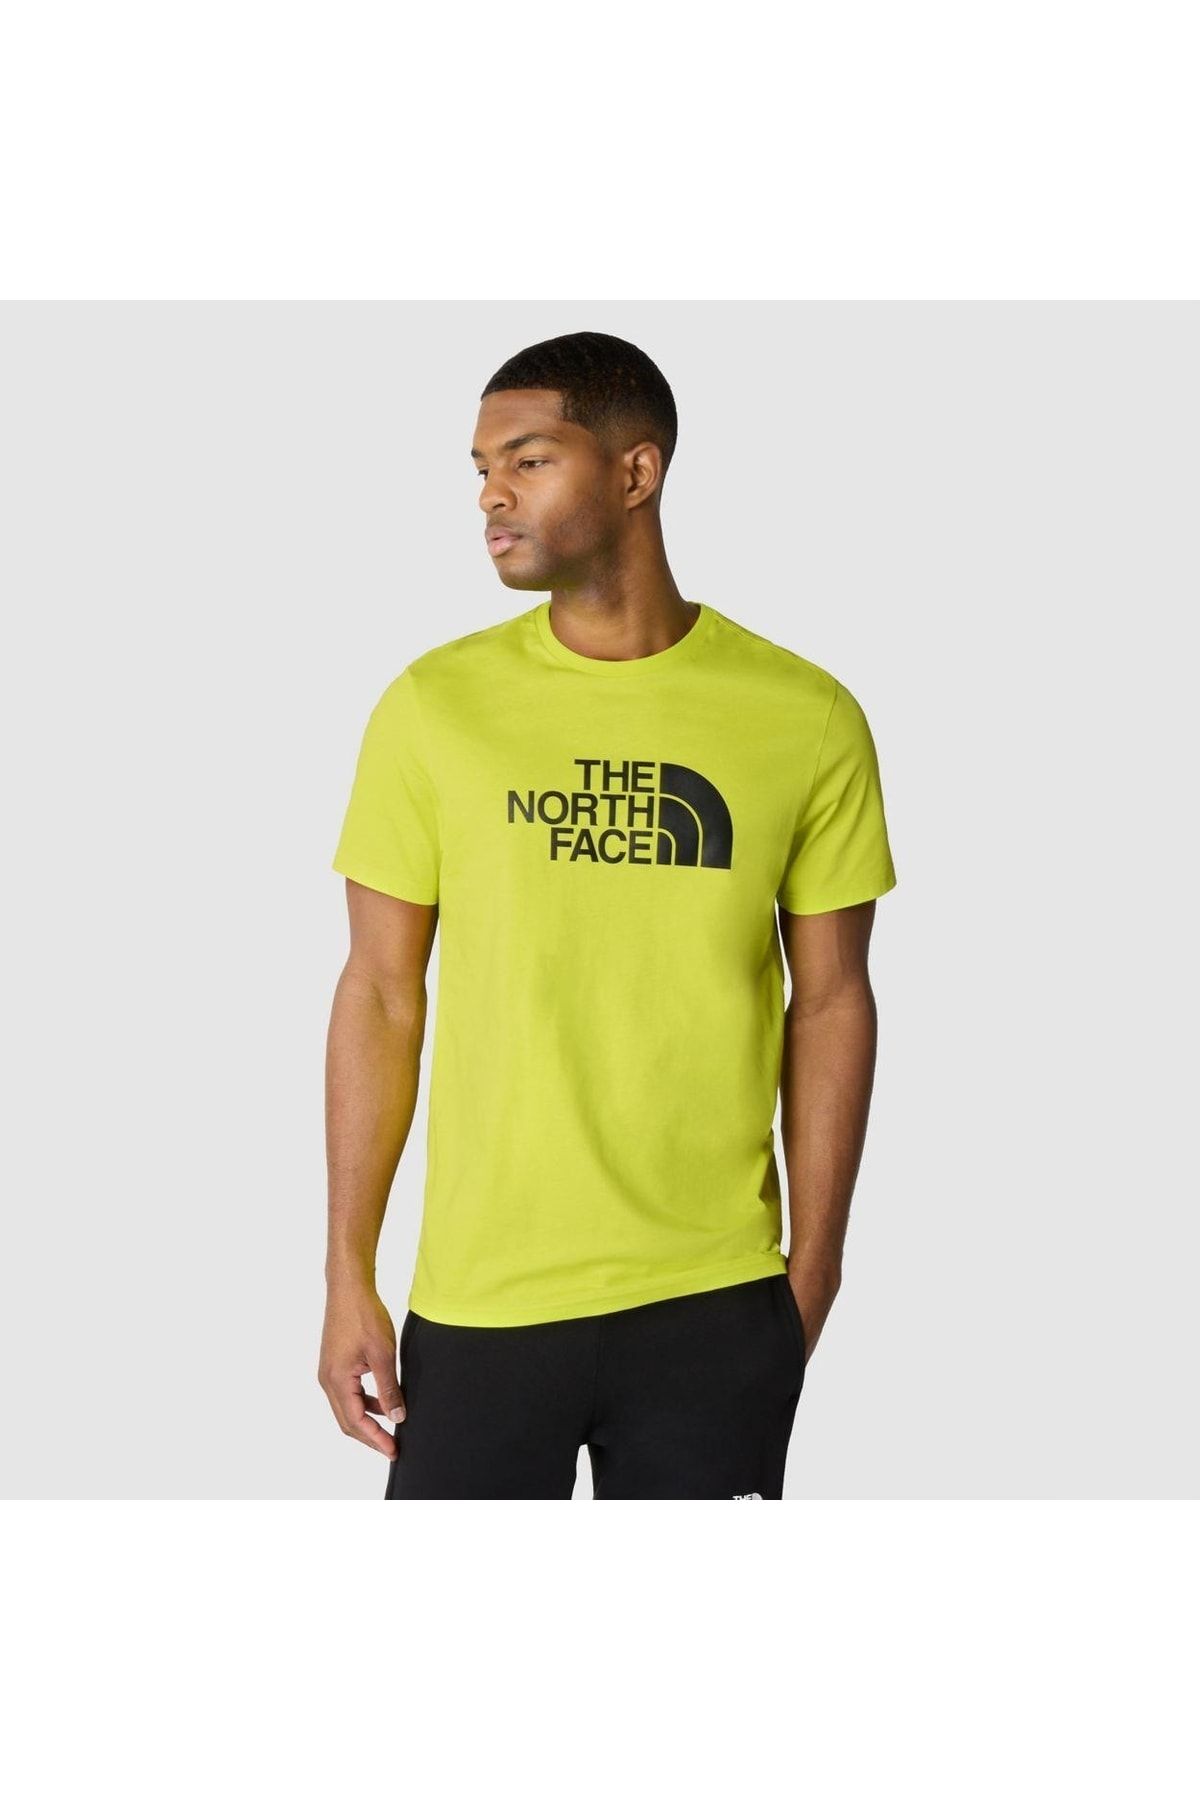 The North Face M S/s Easy Tee - Eu Sarı Erkek Tshirt